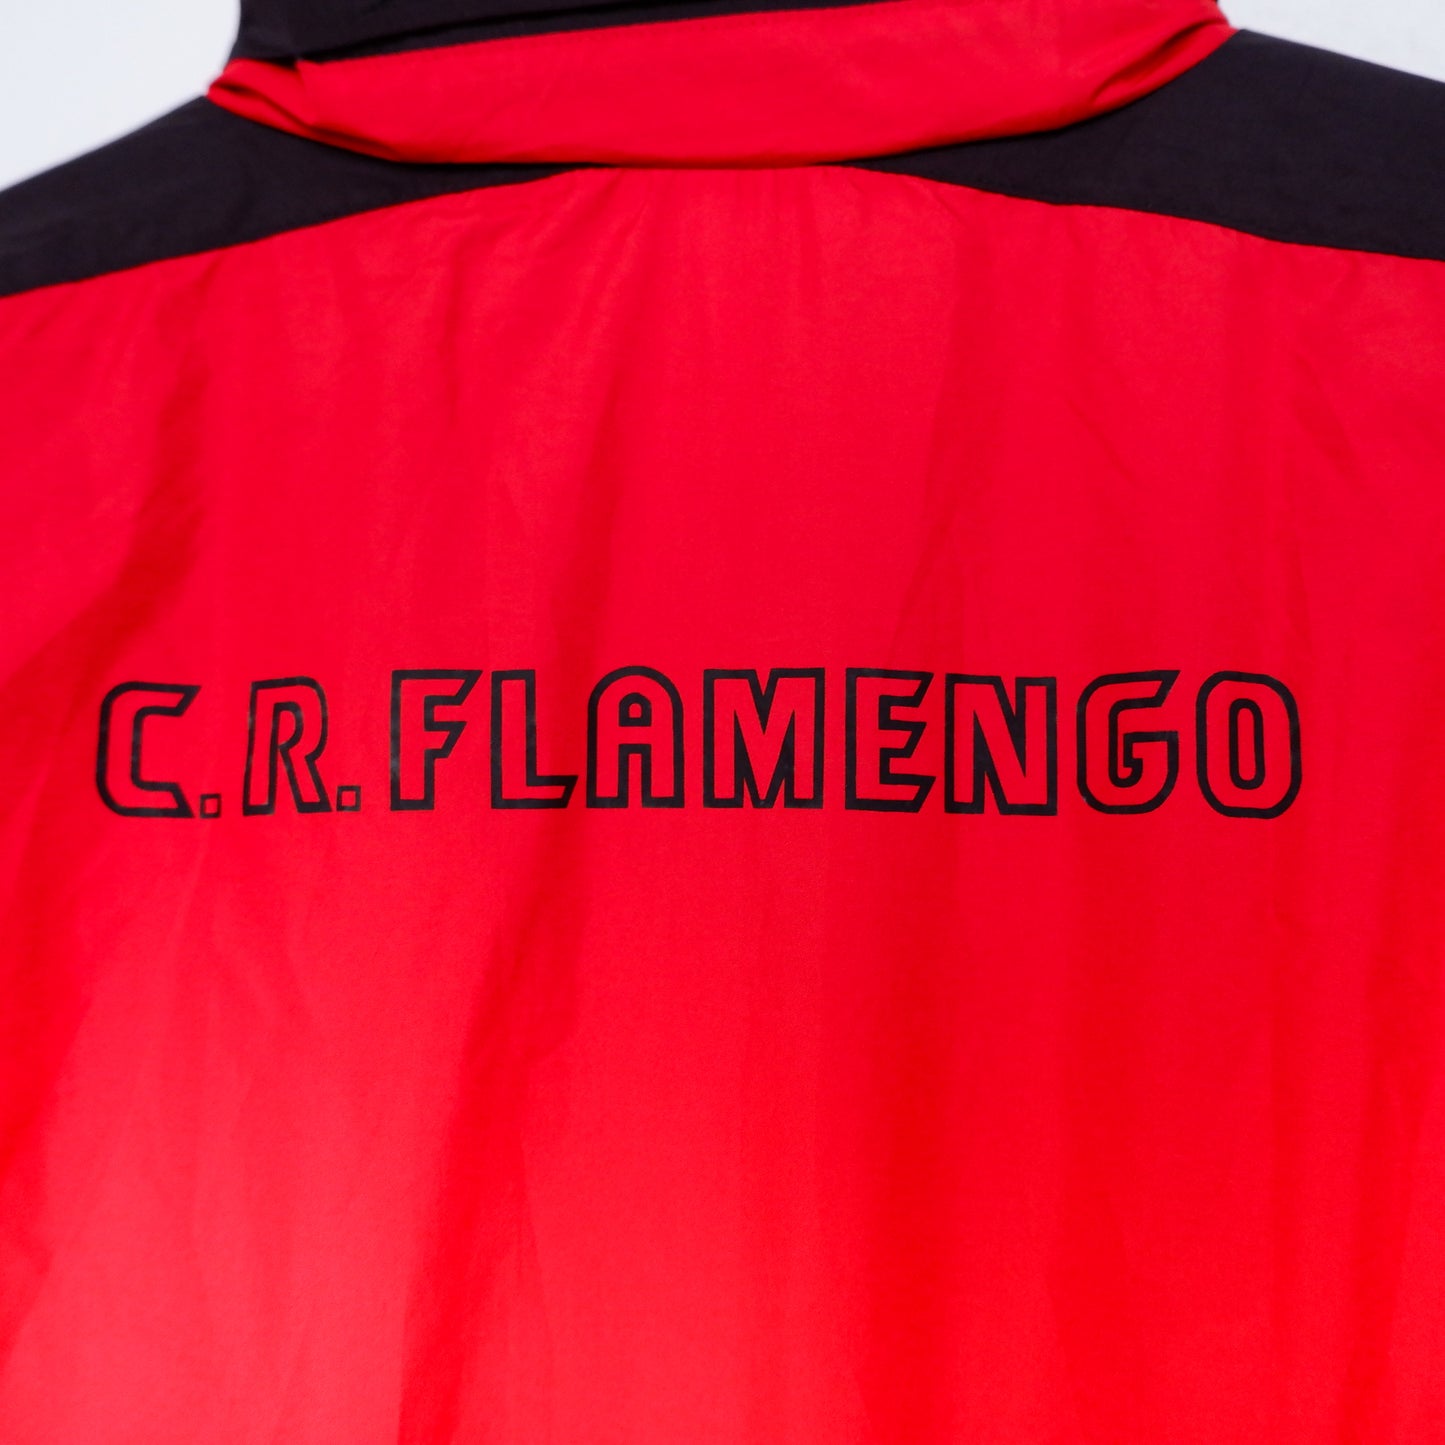 Authentic CR Flamengo Jacket 90s - Size XL